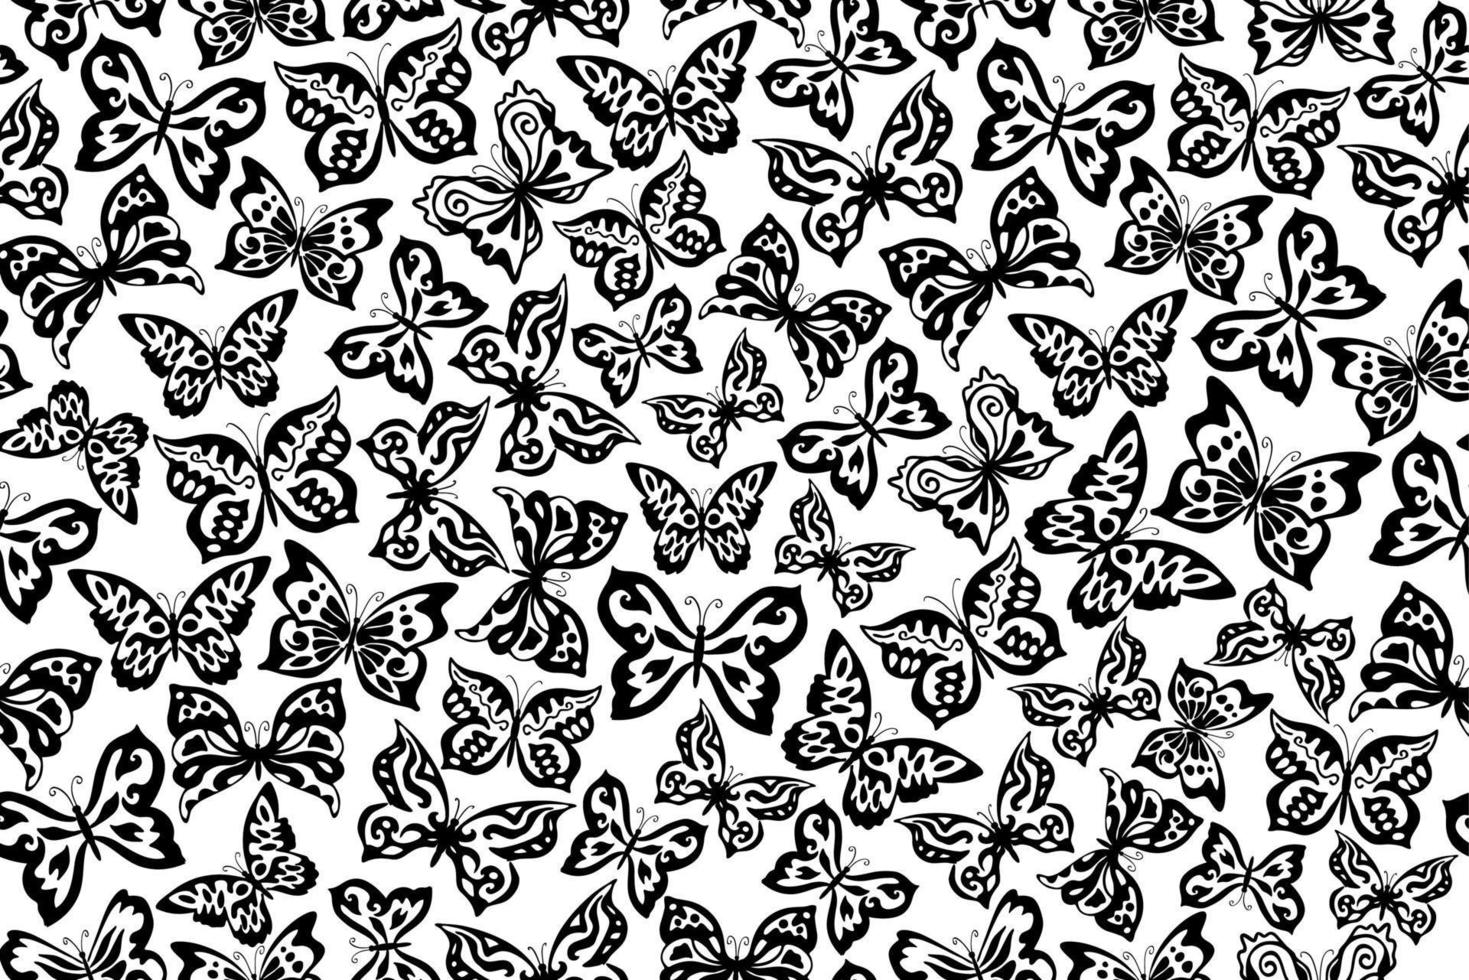 vector naadloos patroon. zwart-witte vlinders die patroon, overladen vlinderpatroon herhalen.